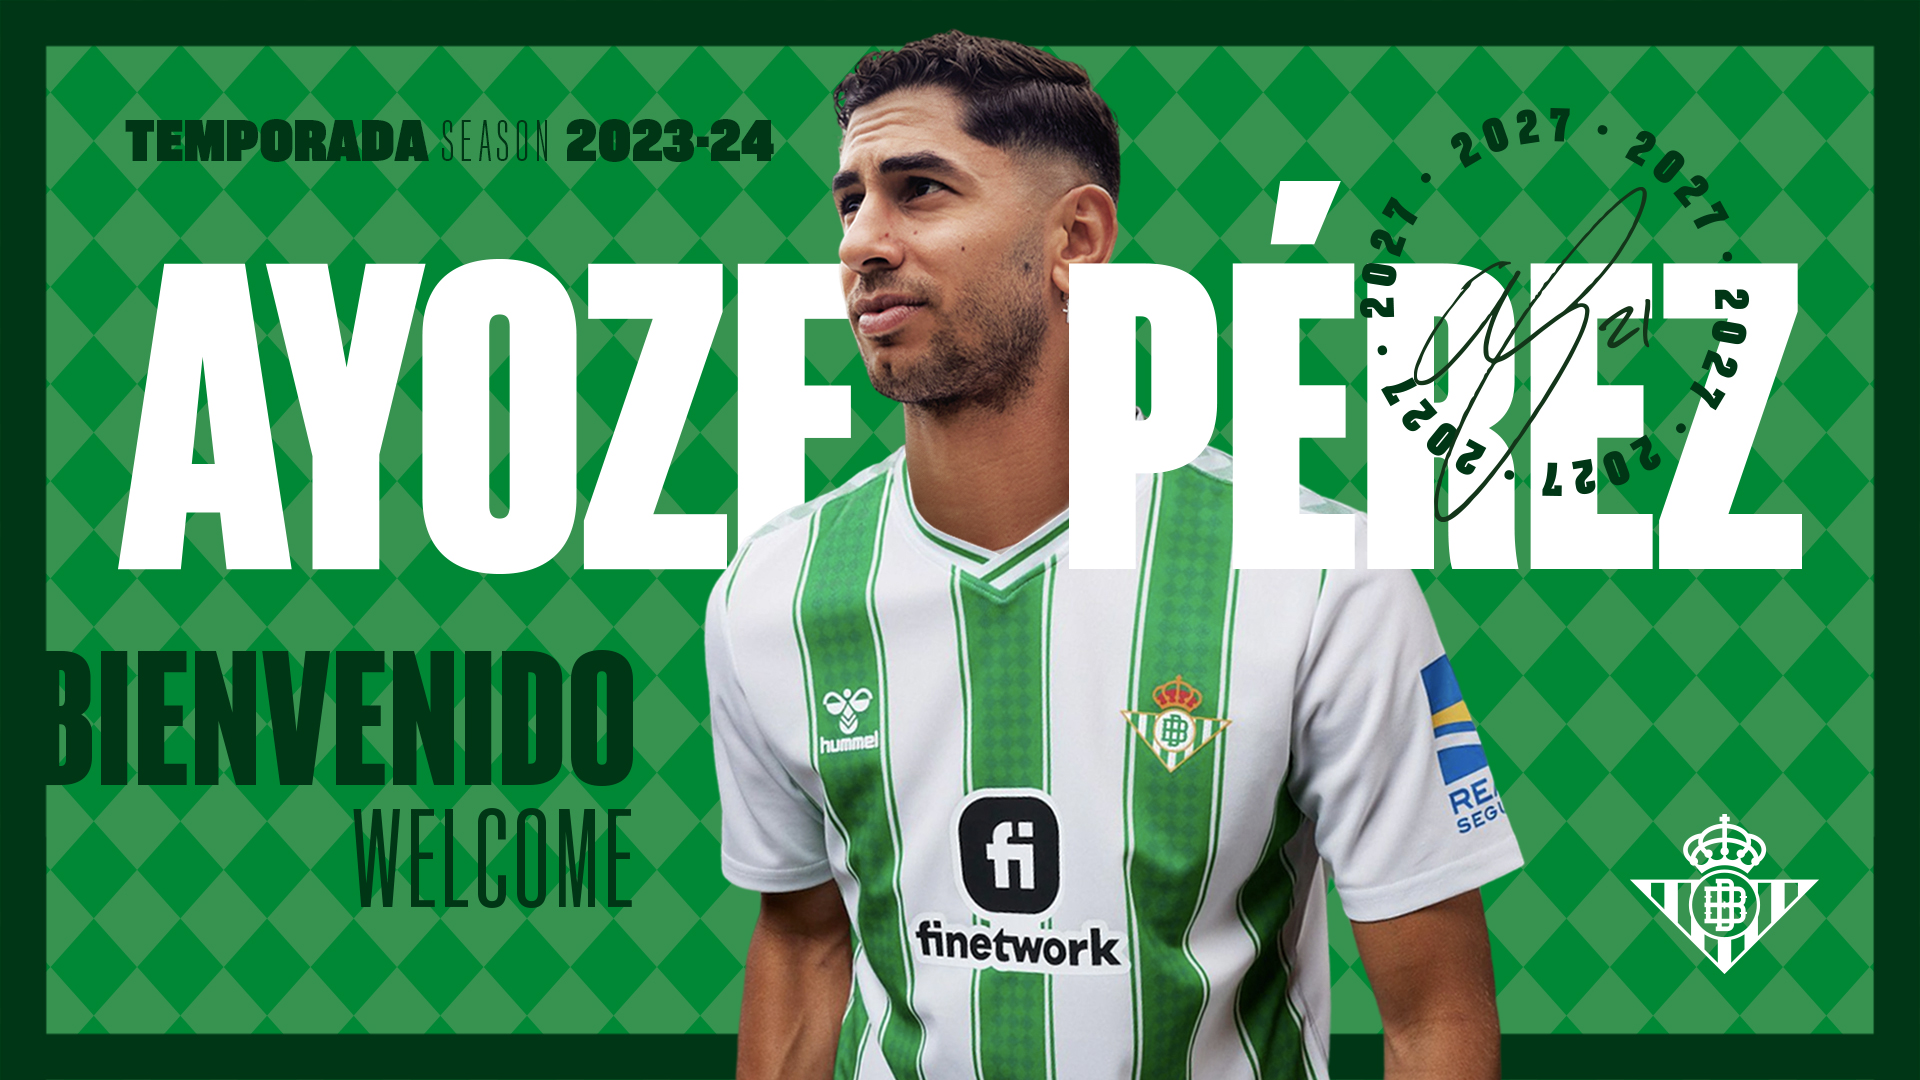 El tinerfeño Ayoze Pérez ficha en propiedad con el Real Betis hasta 2027